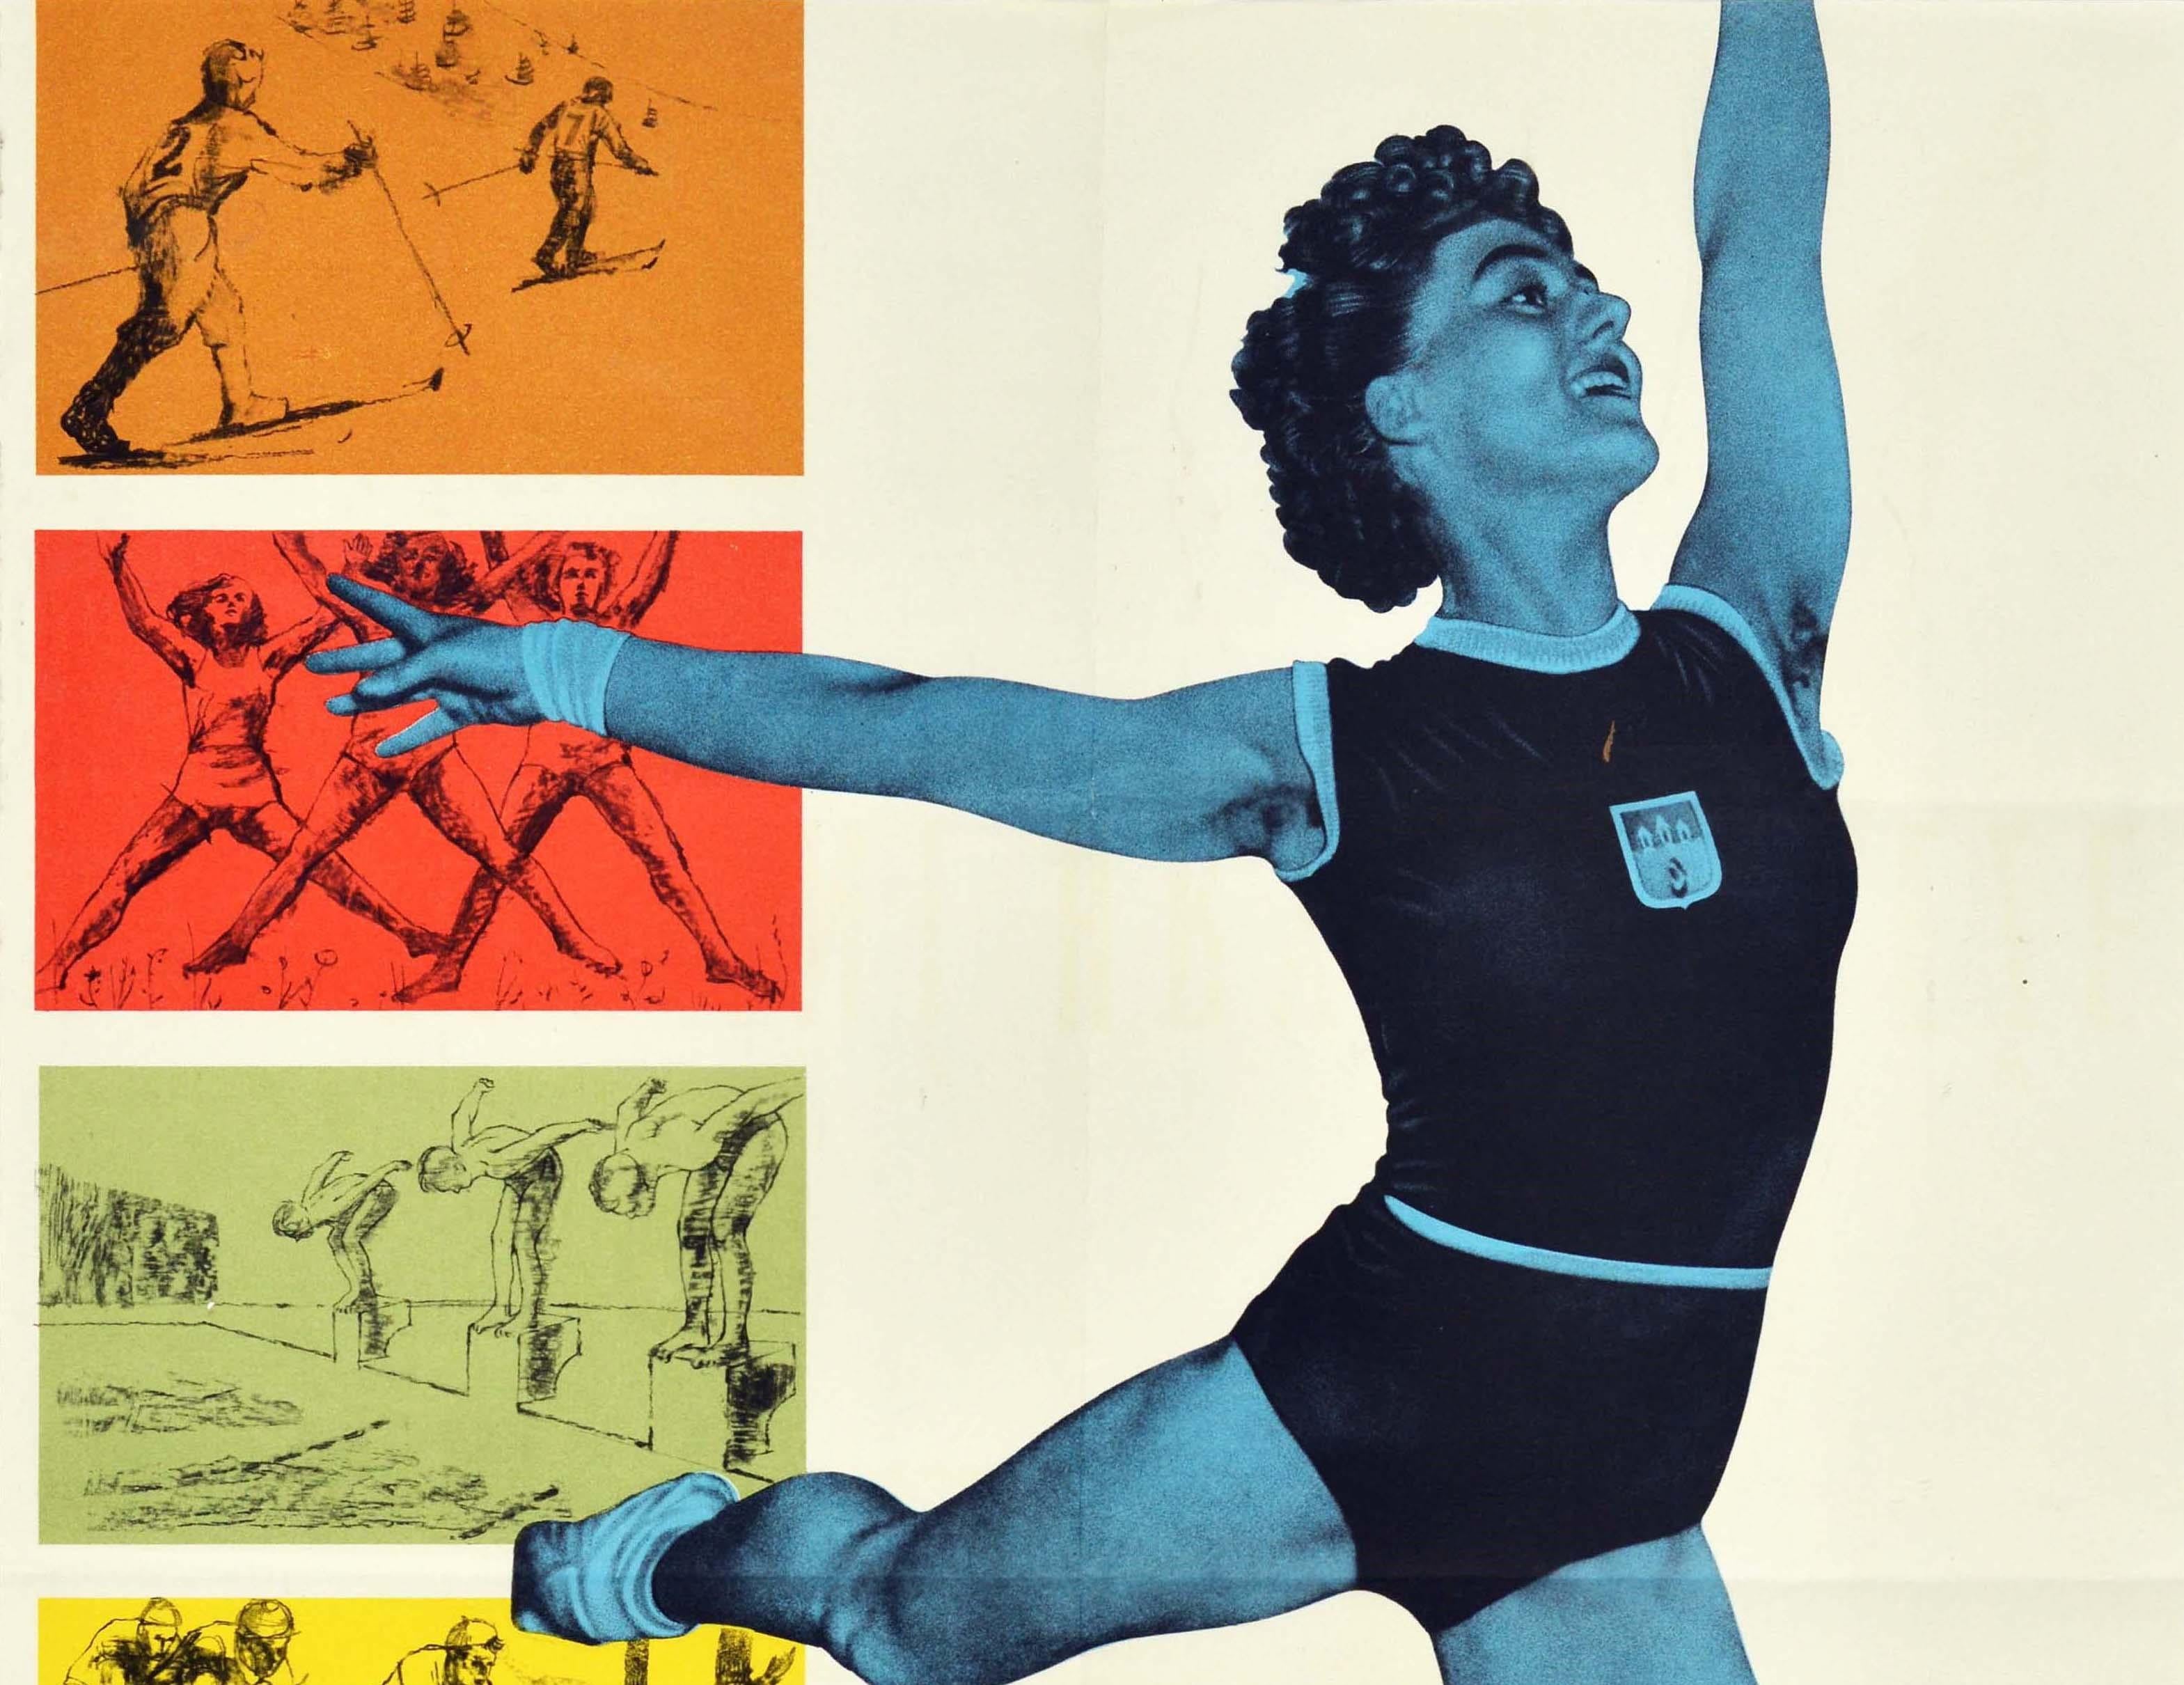 Affiche originale d'époque pour les Jeux sportifs de la jeunesse / Sportovni Hry Mladeze comportant une ligne d'images sur le côté gauche représentant des skieurs de fond sur un fond orange, des athlètes effectuant des sauts en étoile sur un fond